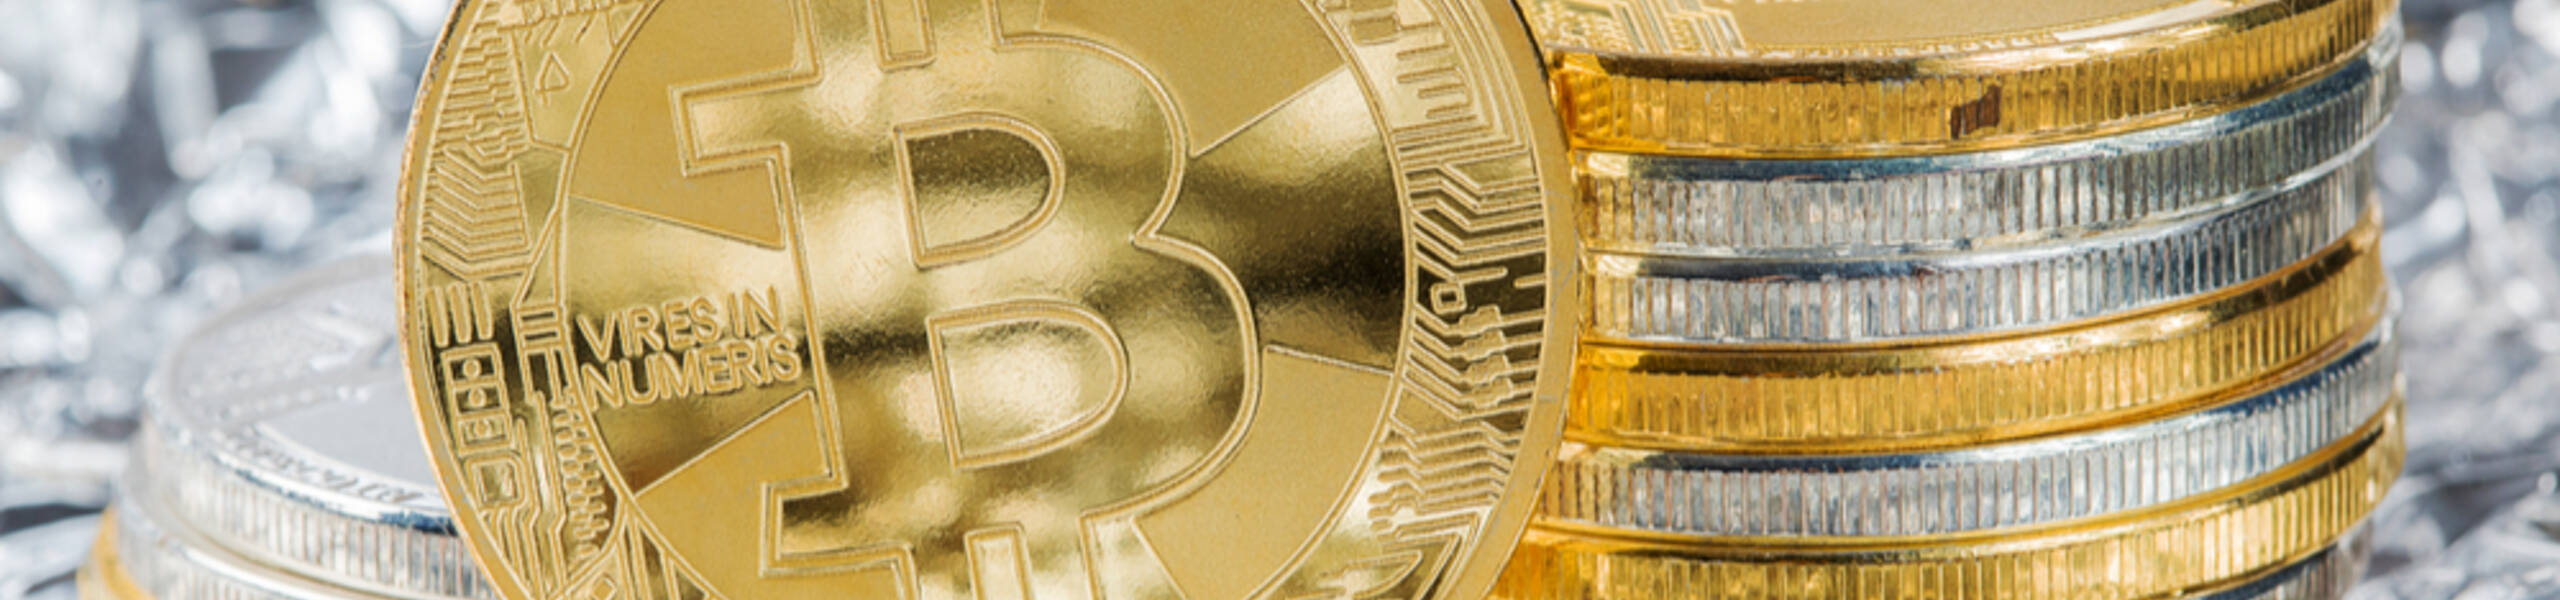 ธนาคารกลางญี่ปุ่นตั้งข้อสงสัยเกี่ยวกับ Bitcoin